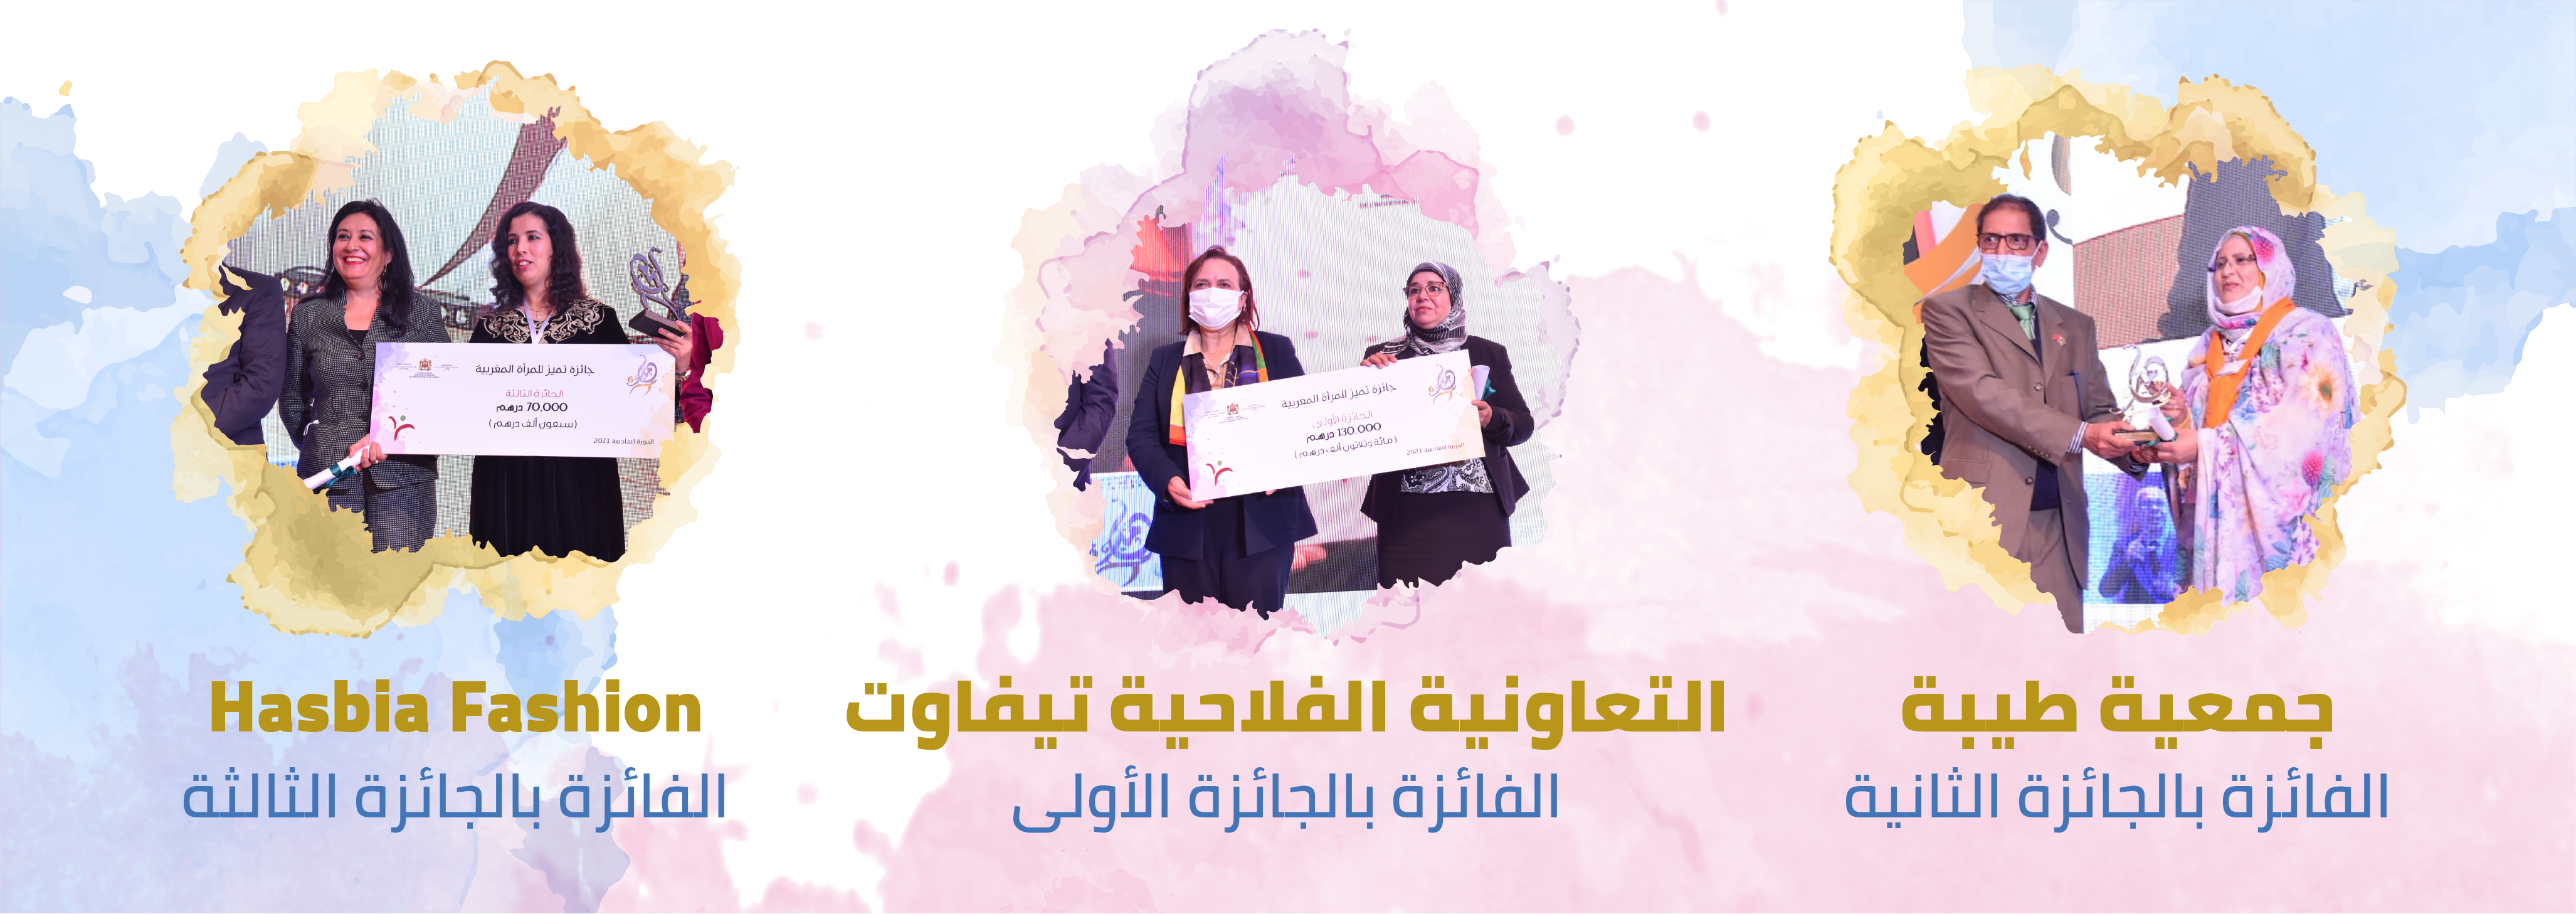 جائزة تَميُّز للمرأة المغربية في دورتها السادسة